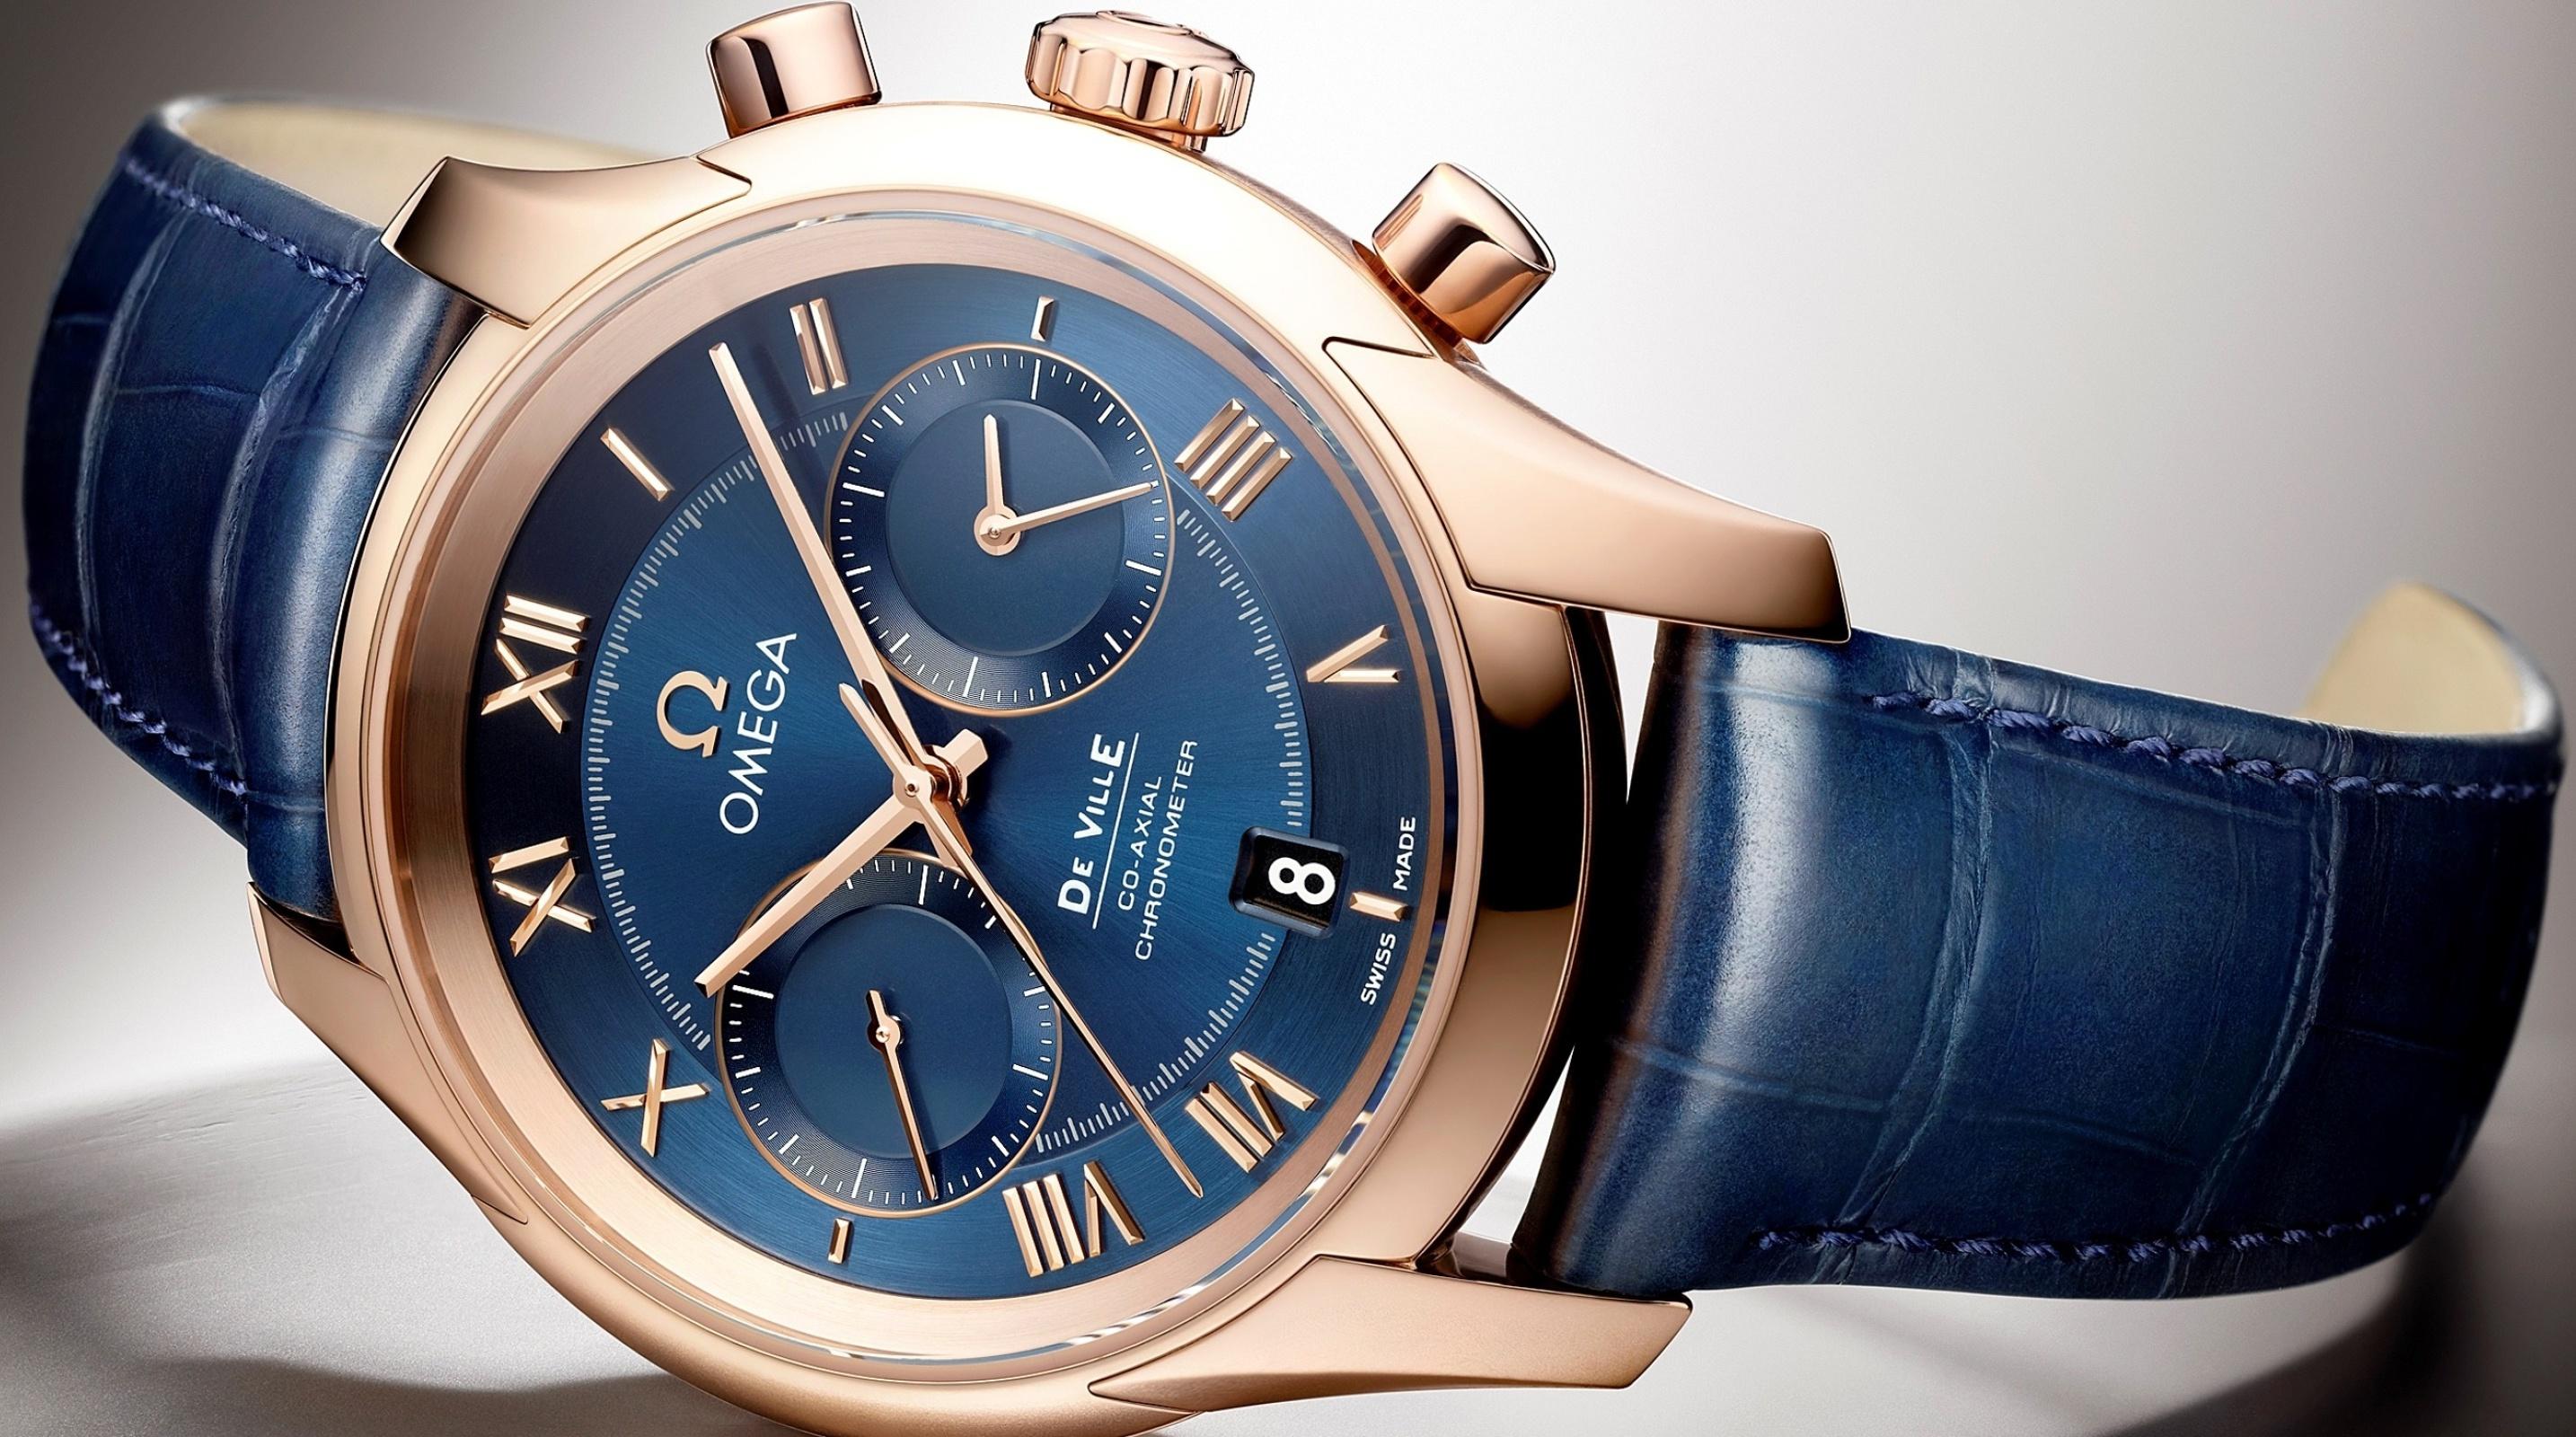 Швейцарские часы сайт. Часы Omega w7579. Часы Омега 750. Швейцарские часы Omega. Часы Omega Chronometer.